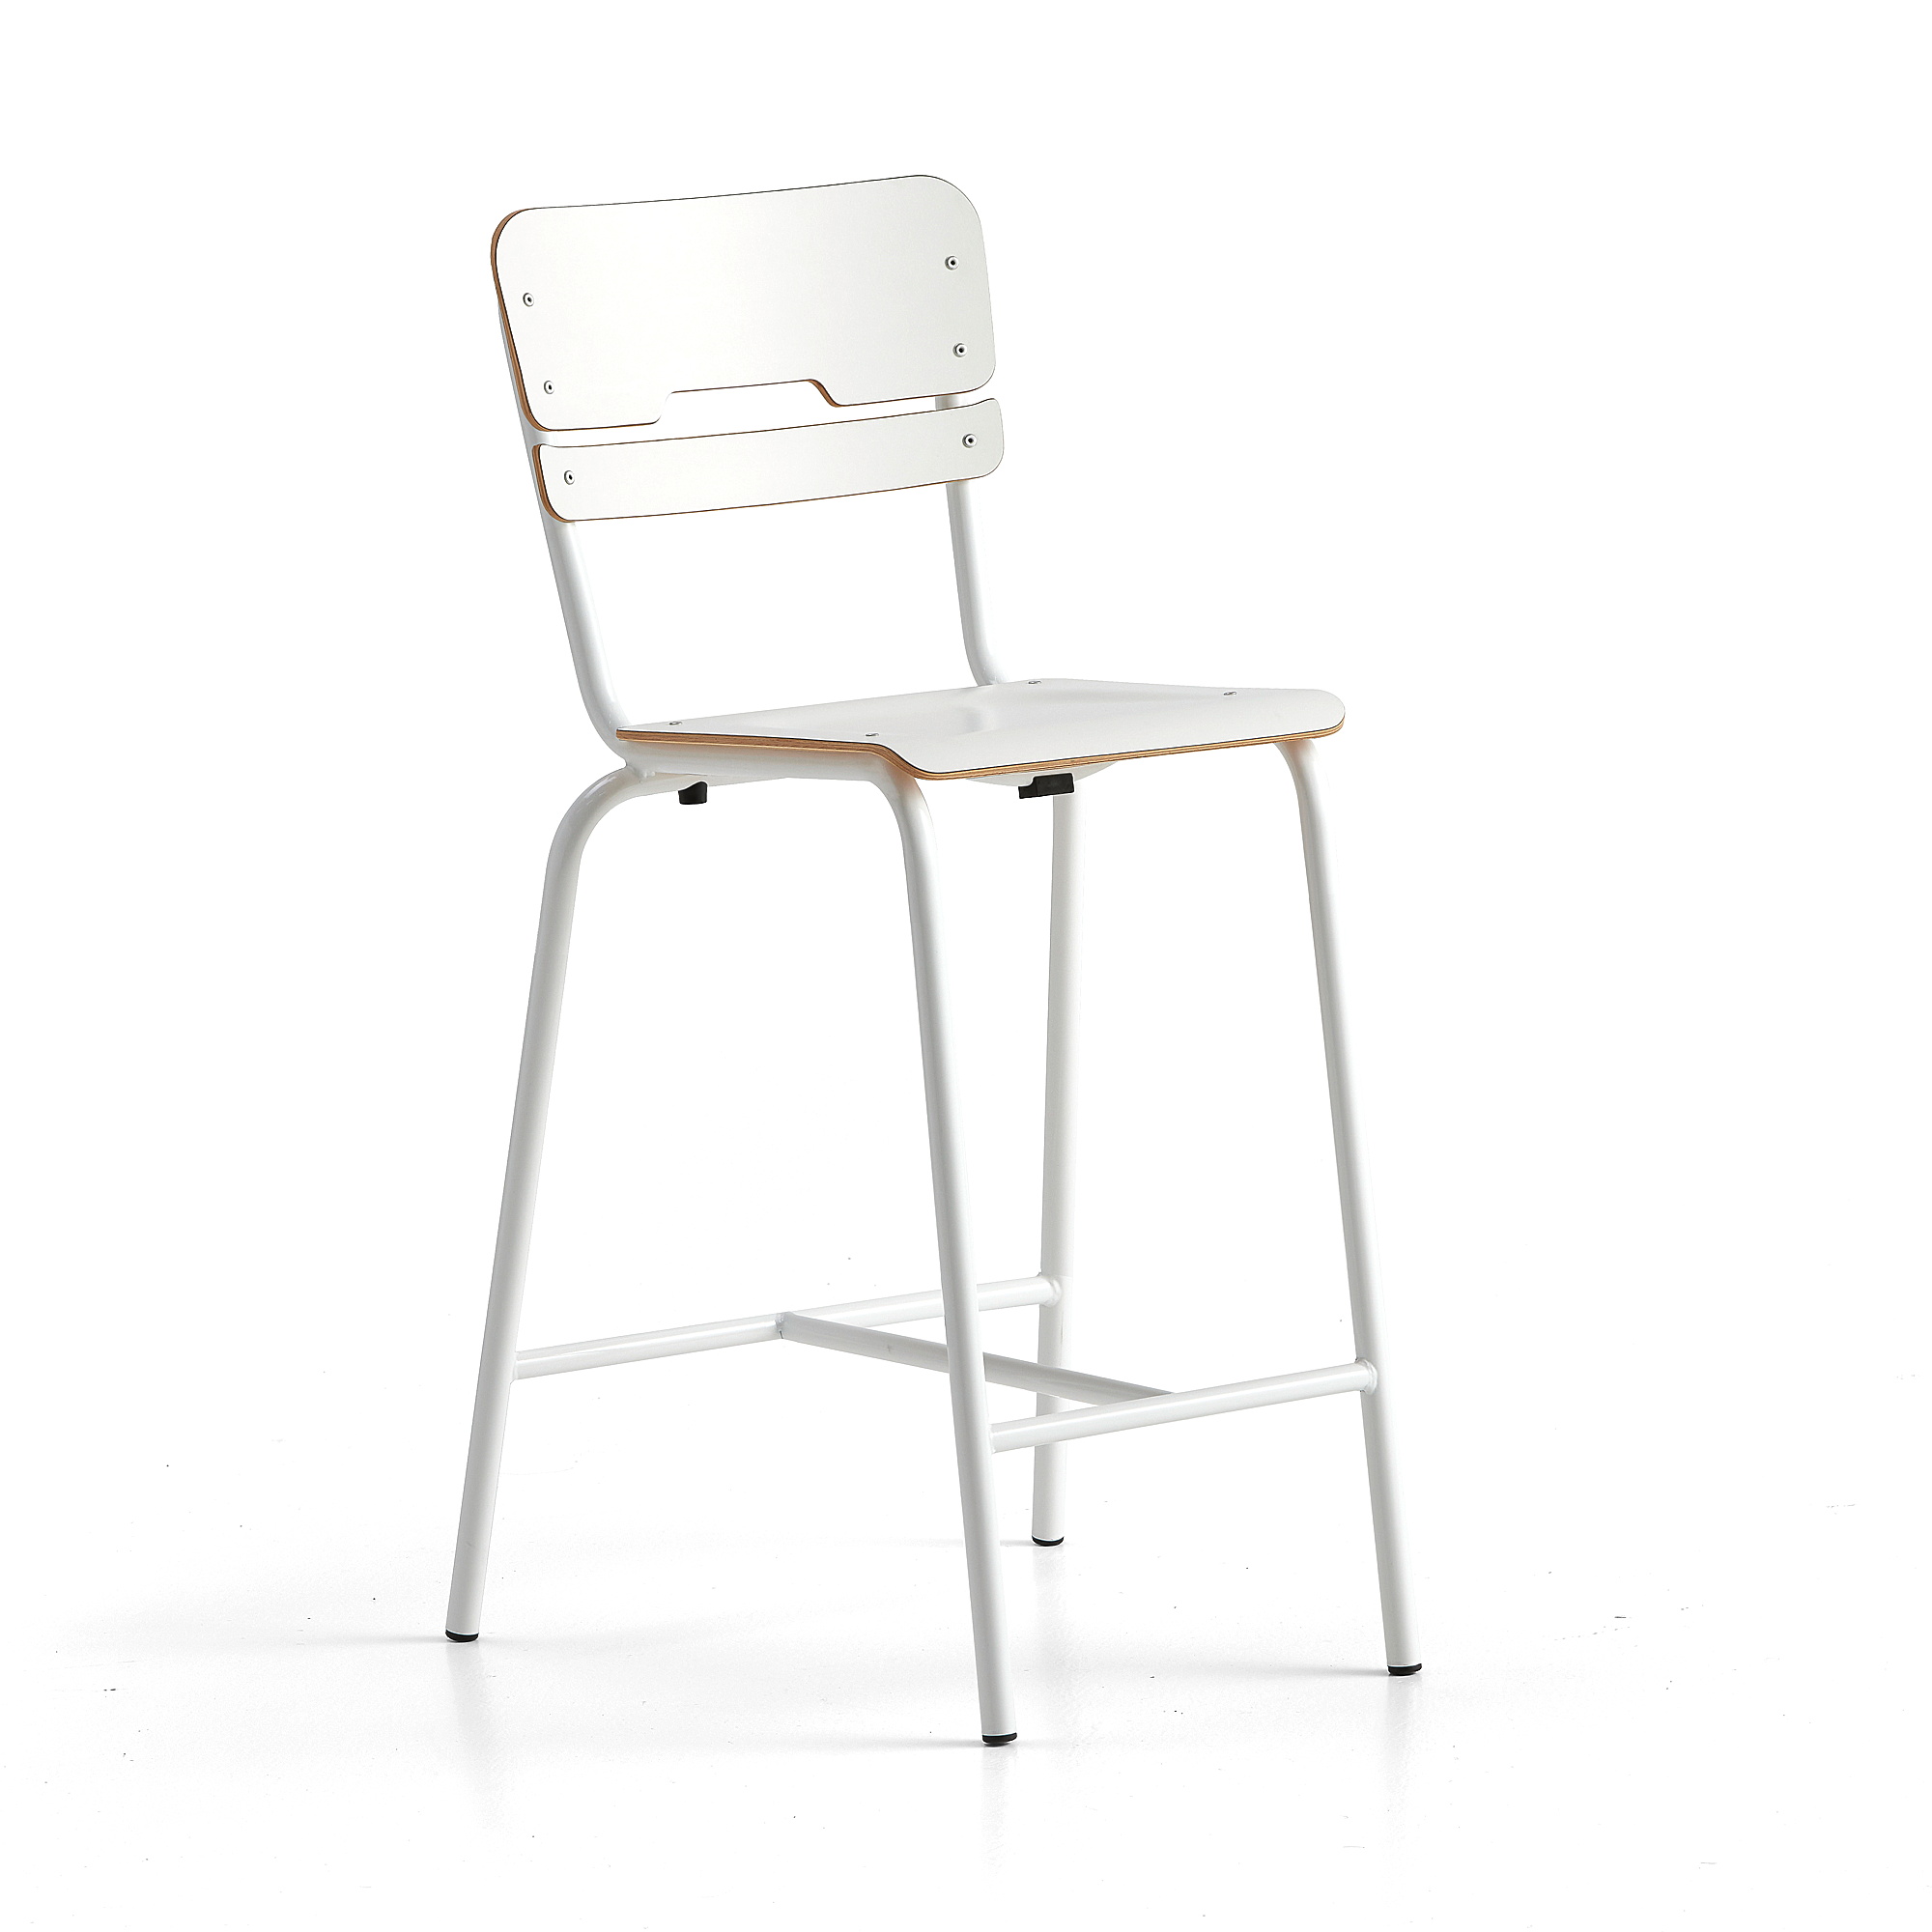 Školní židle SCIENTIA, sedák 360x360 mm, výška 650 mm, bílá/bílá